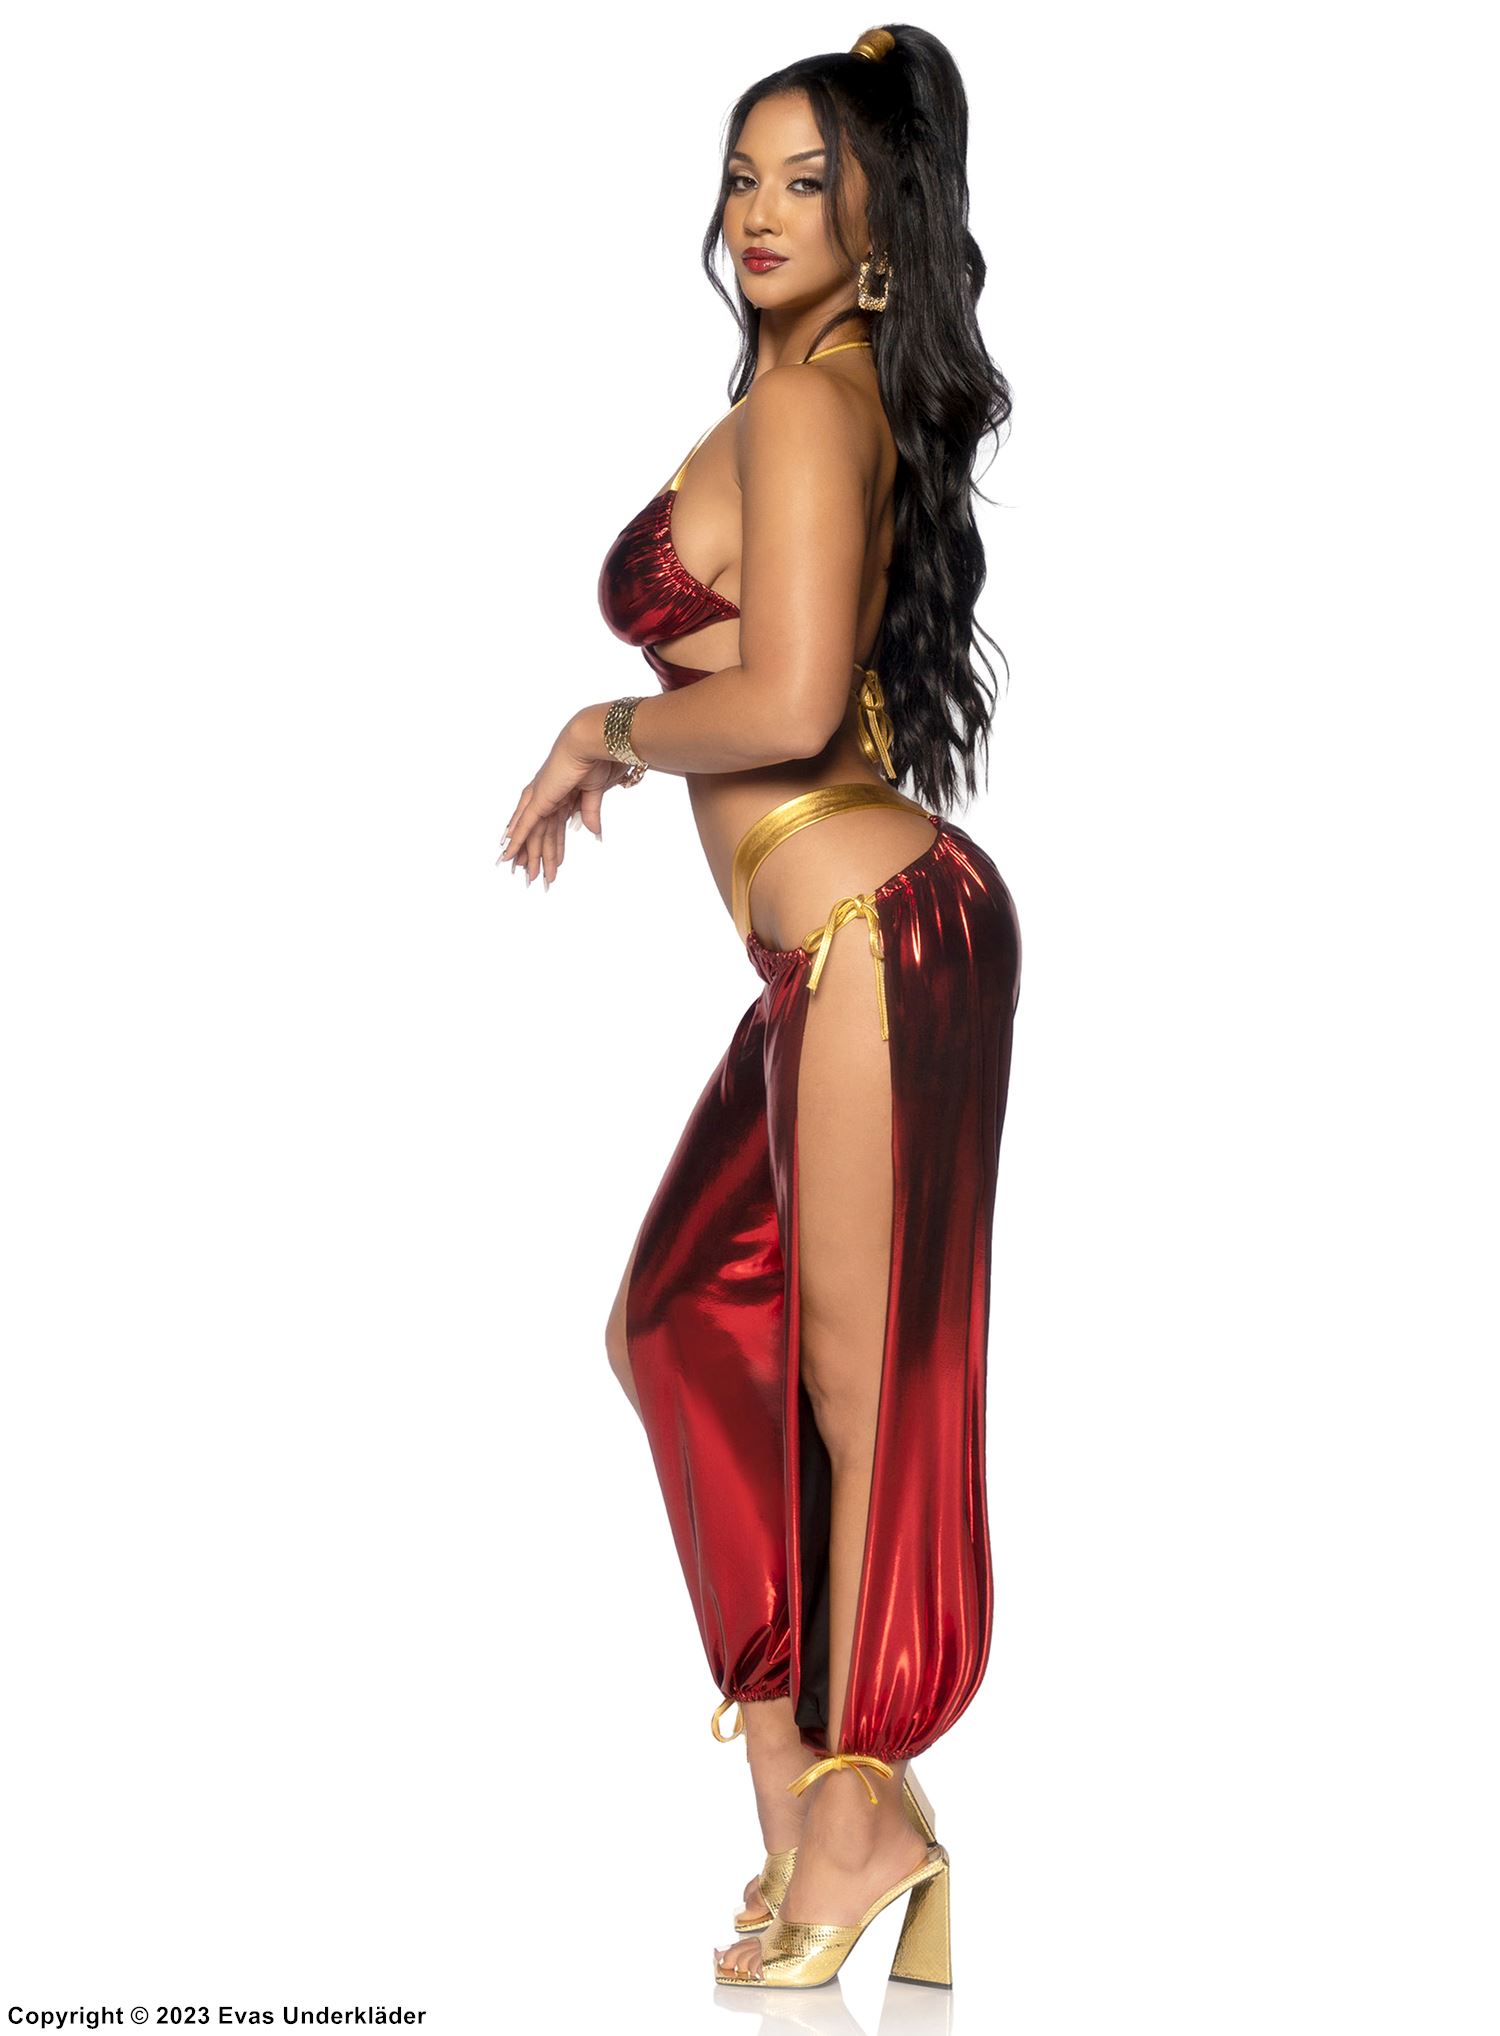 Prinzessin Jasmin aus Aladdin, Kostüm-Oberteil und -Hose, schillernder Gewebe, hoher Schlitz